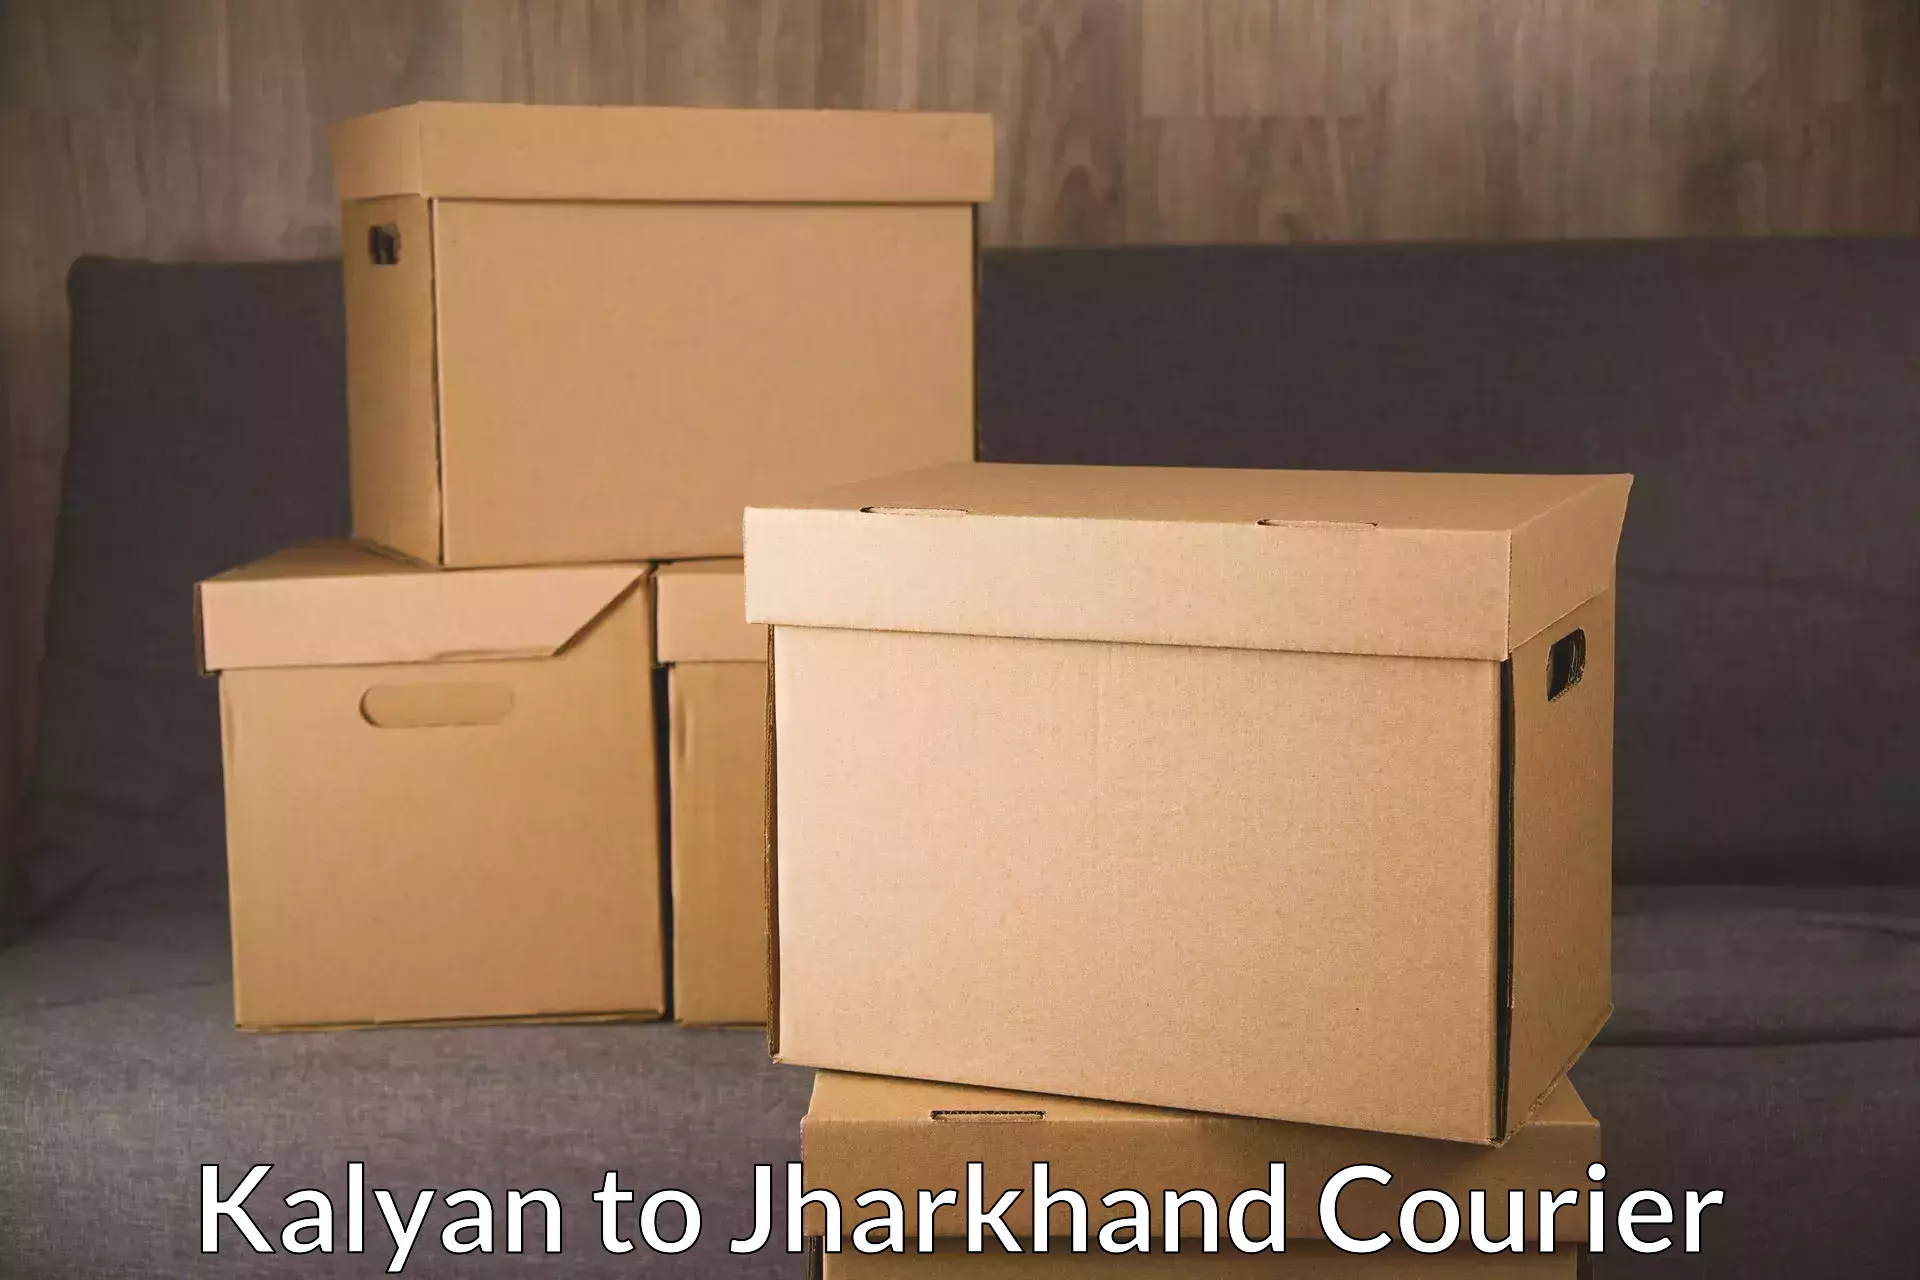 Specialized courier services Kalyan to Lohardaga